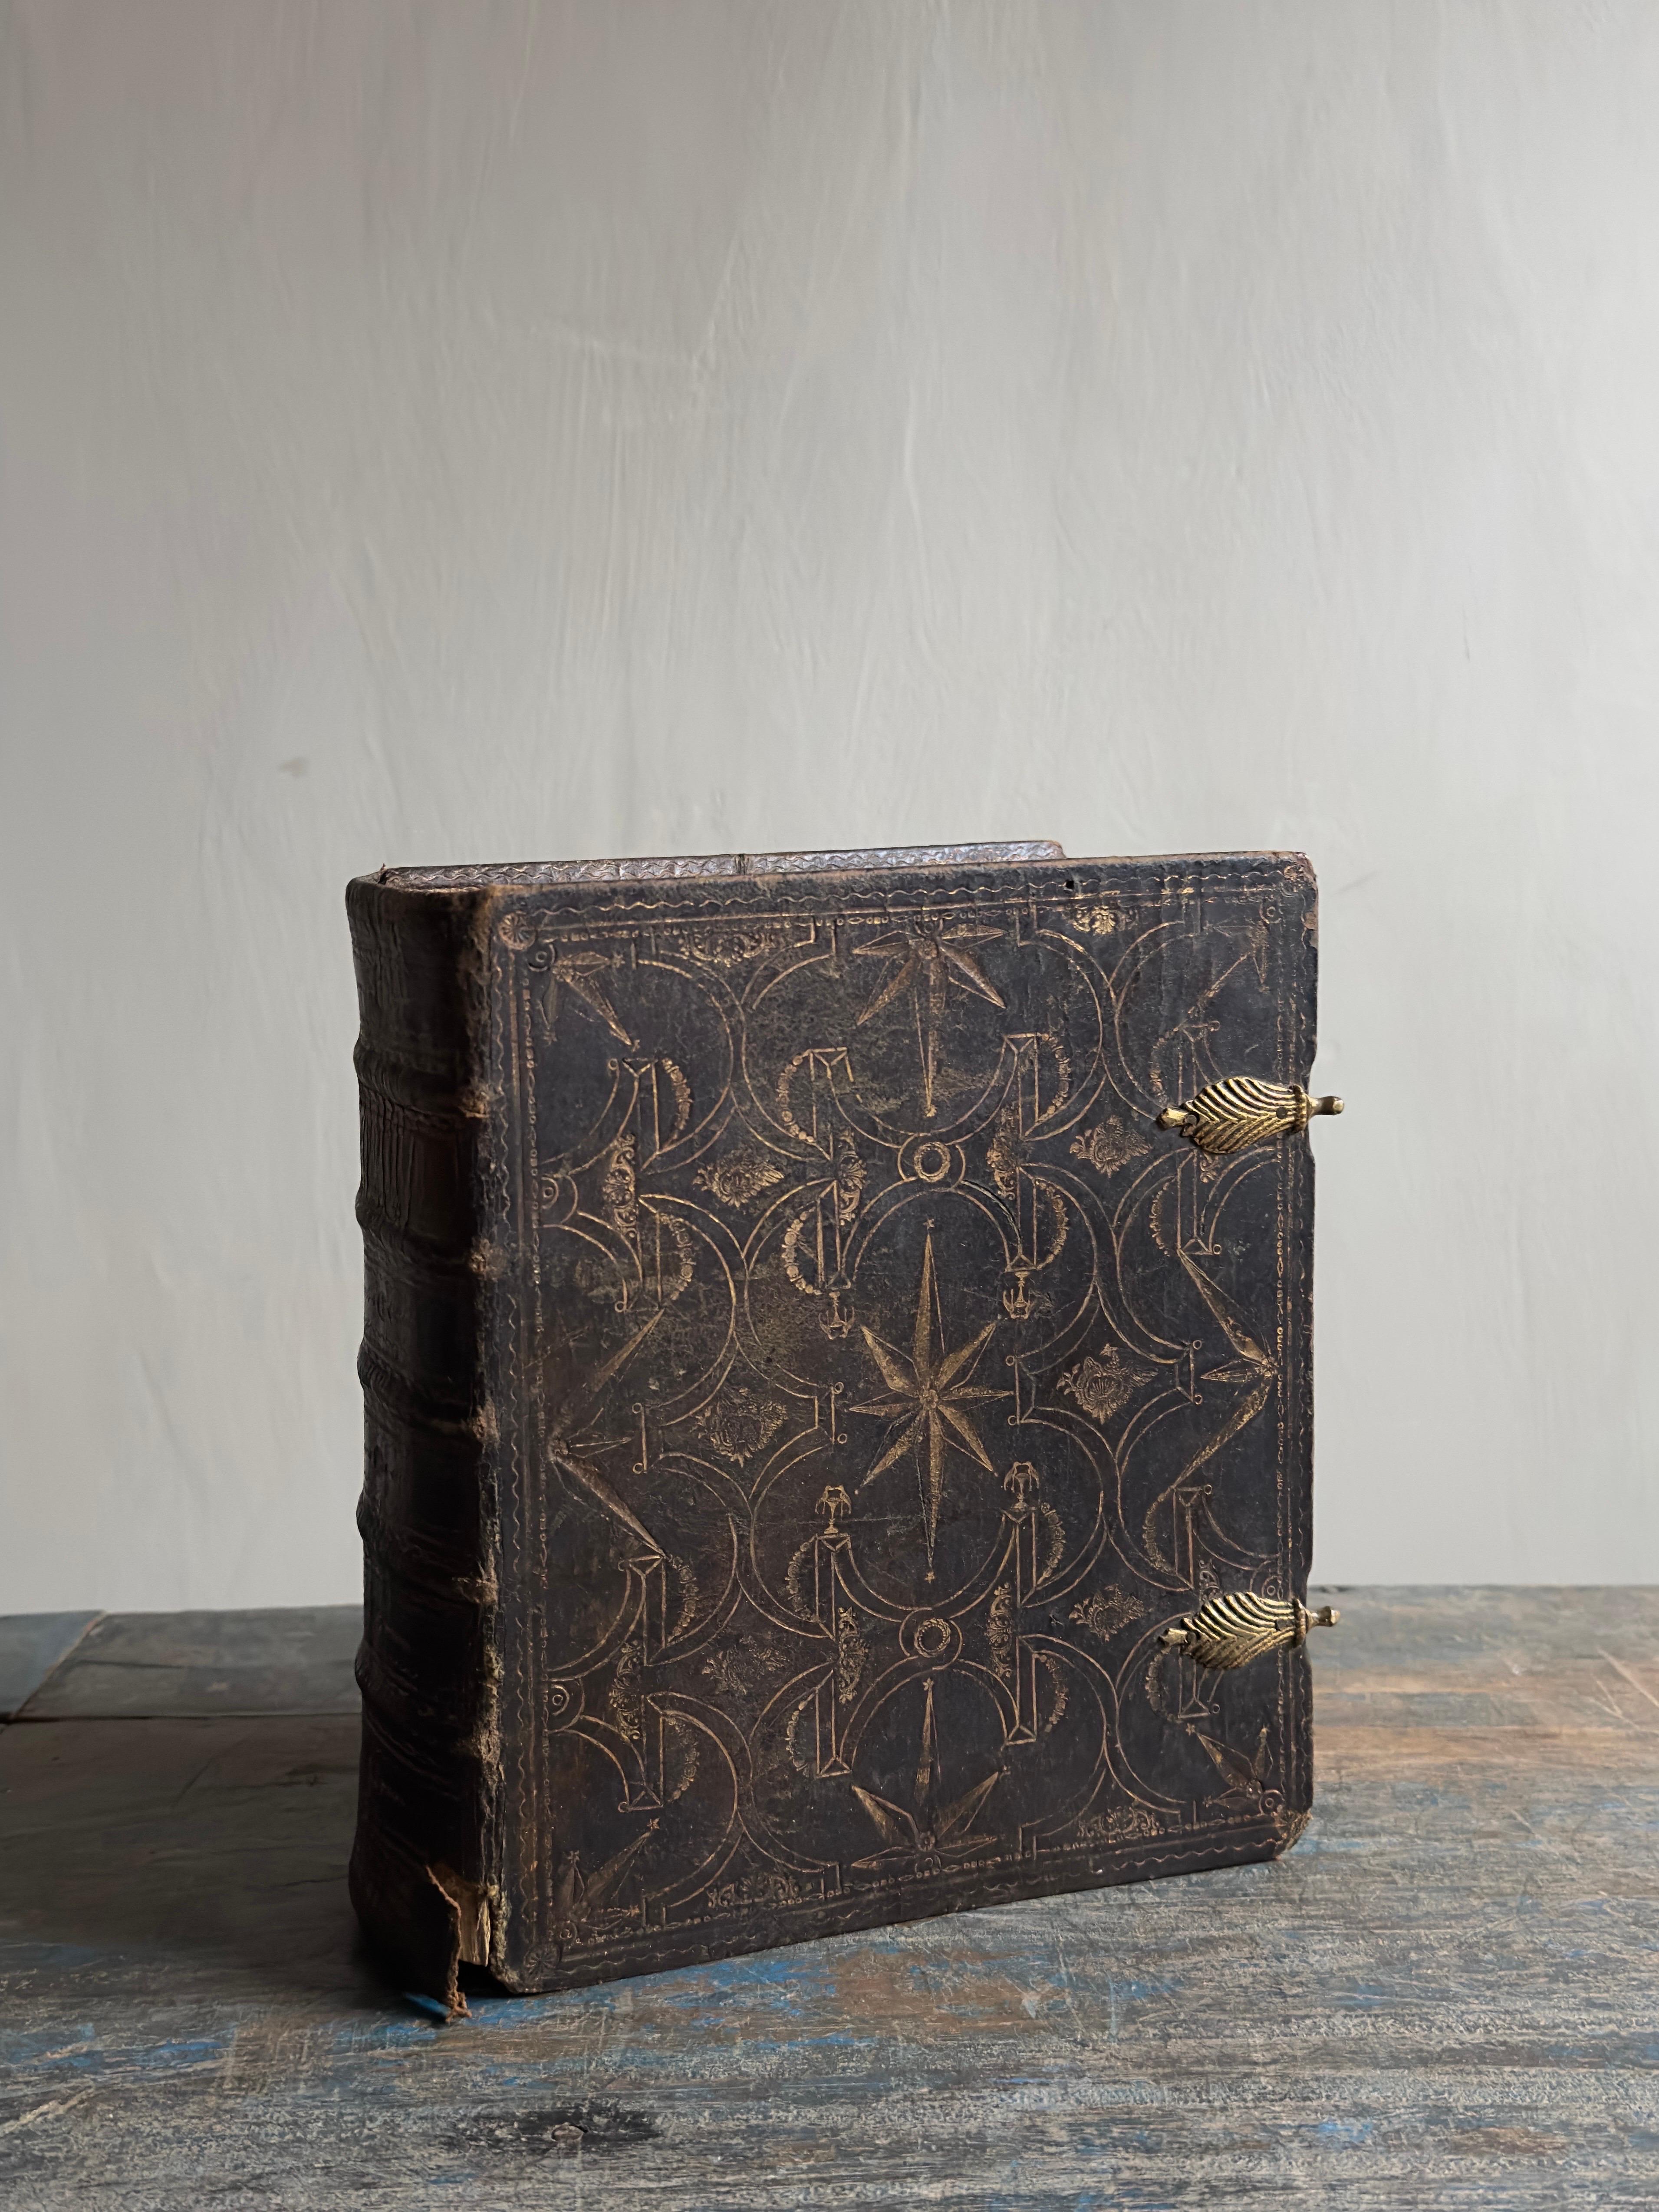 Eine schöne antike Bibel aus Skandinavien aus dem Jahr 1810. Der Einband ist wahrscheinlich noch älter, möglicherweise aus dem späten 1700. 

Es eignet sich perfekt als Wabi Sabi-Dekorationselement, um dem Raum eine bestimmte Stimmung zu verleihen.